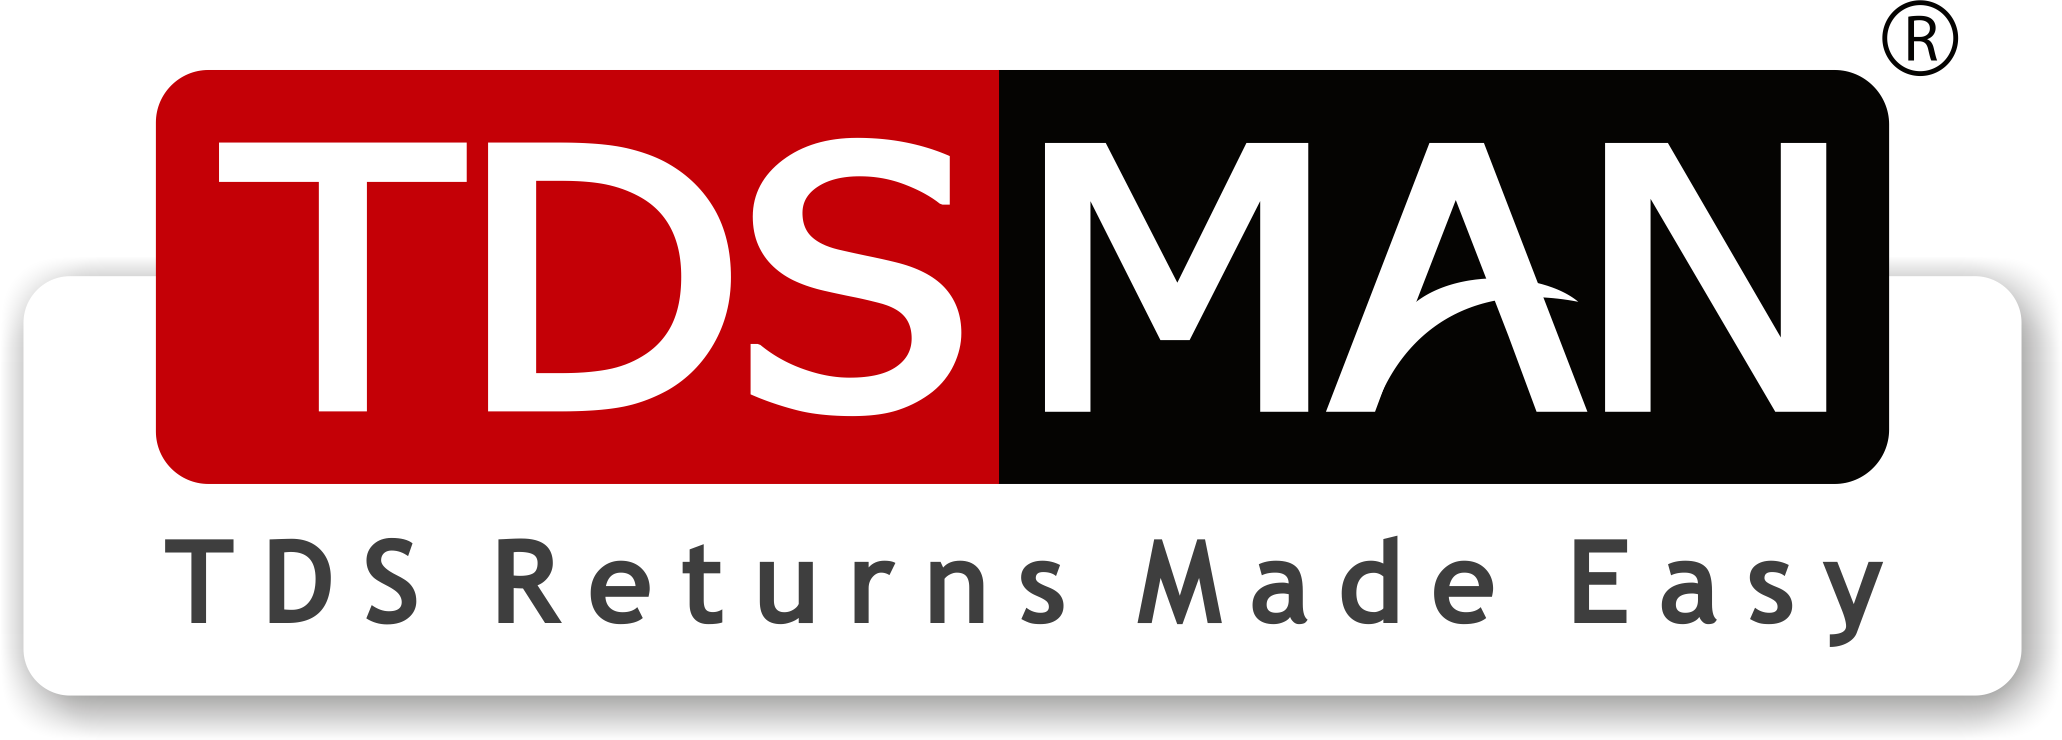 TDSMAN - TDS return software